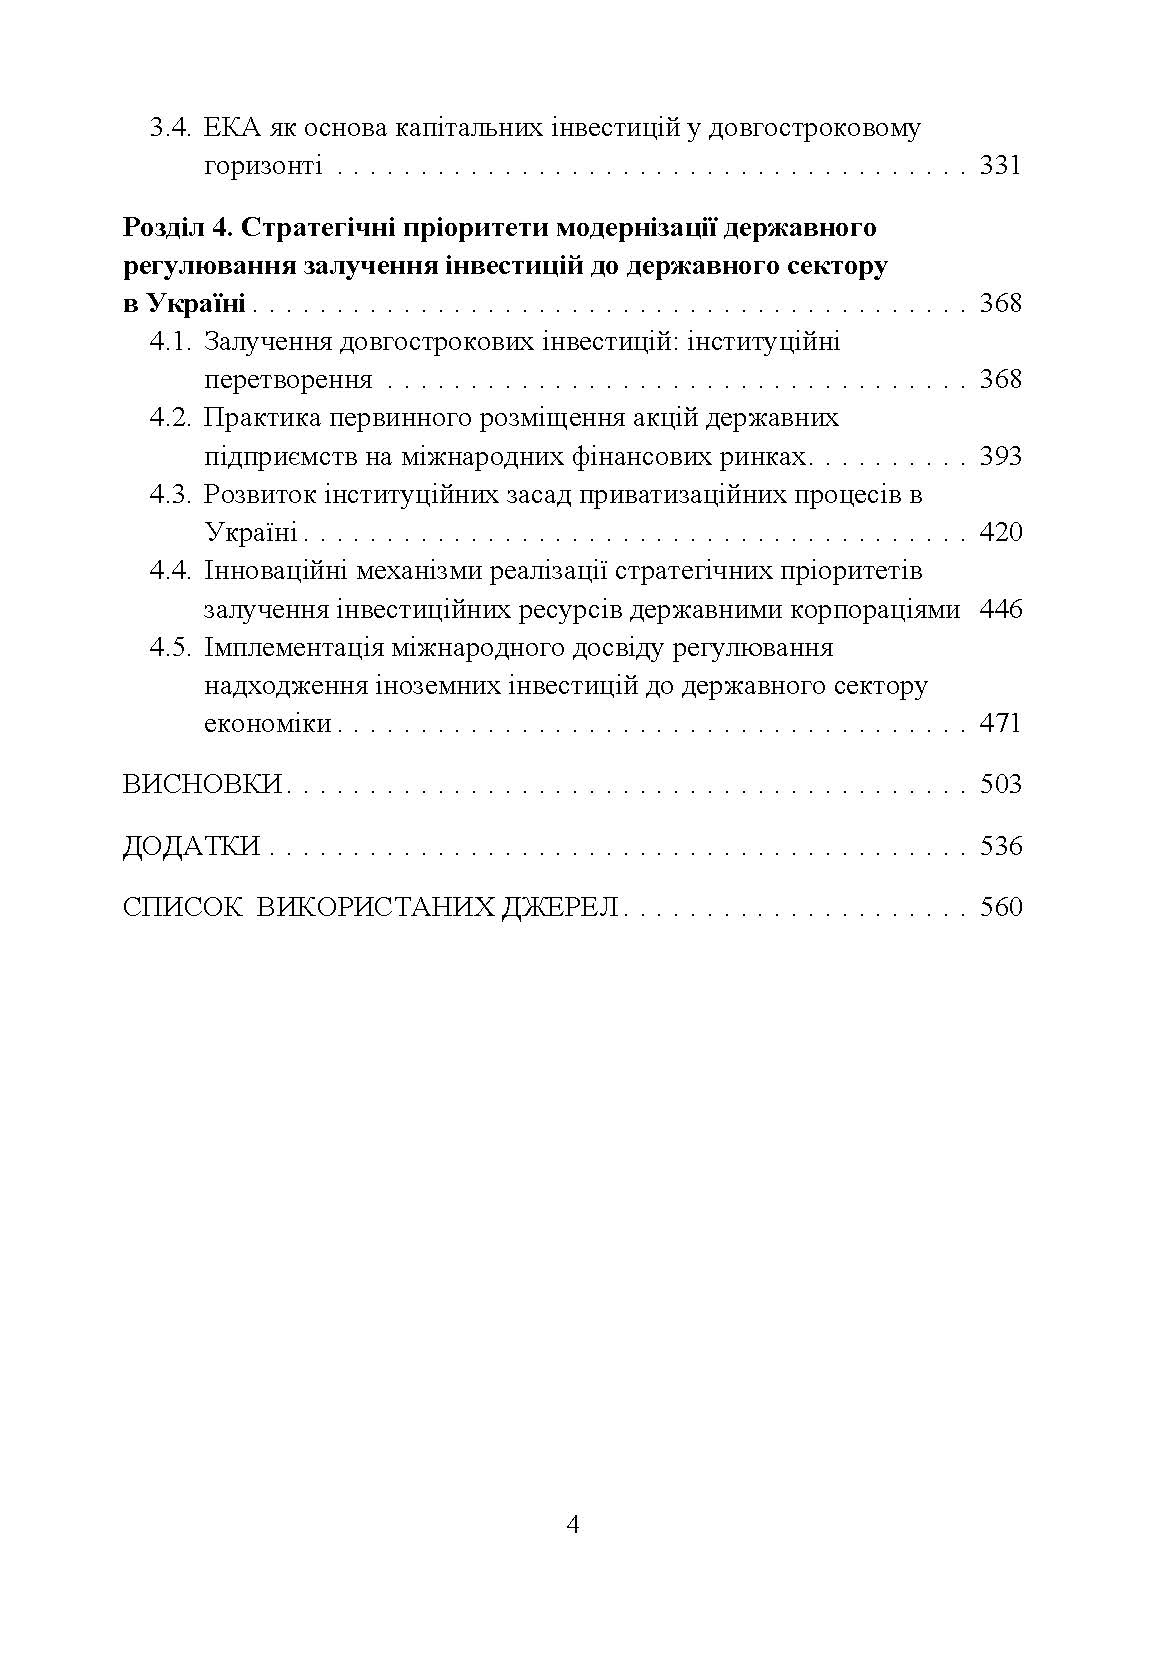 Державне регулювання інвестиційної діяльності (2020 год)). Автор — Корнєєва Ю.В.. 